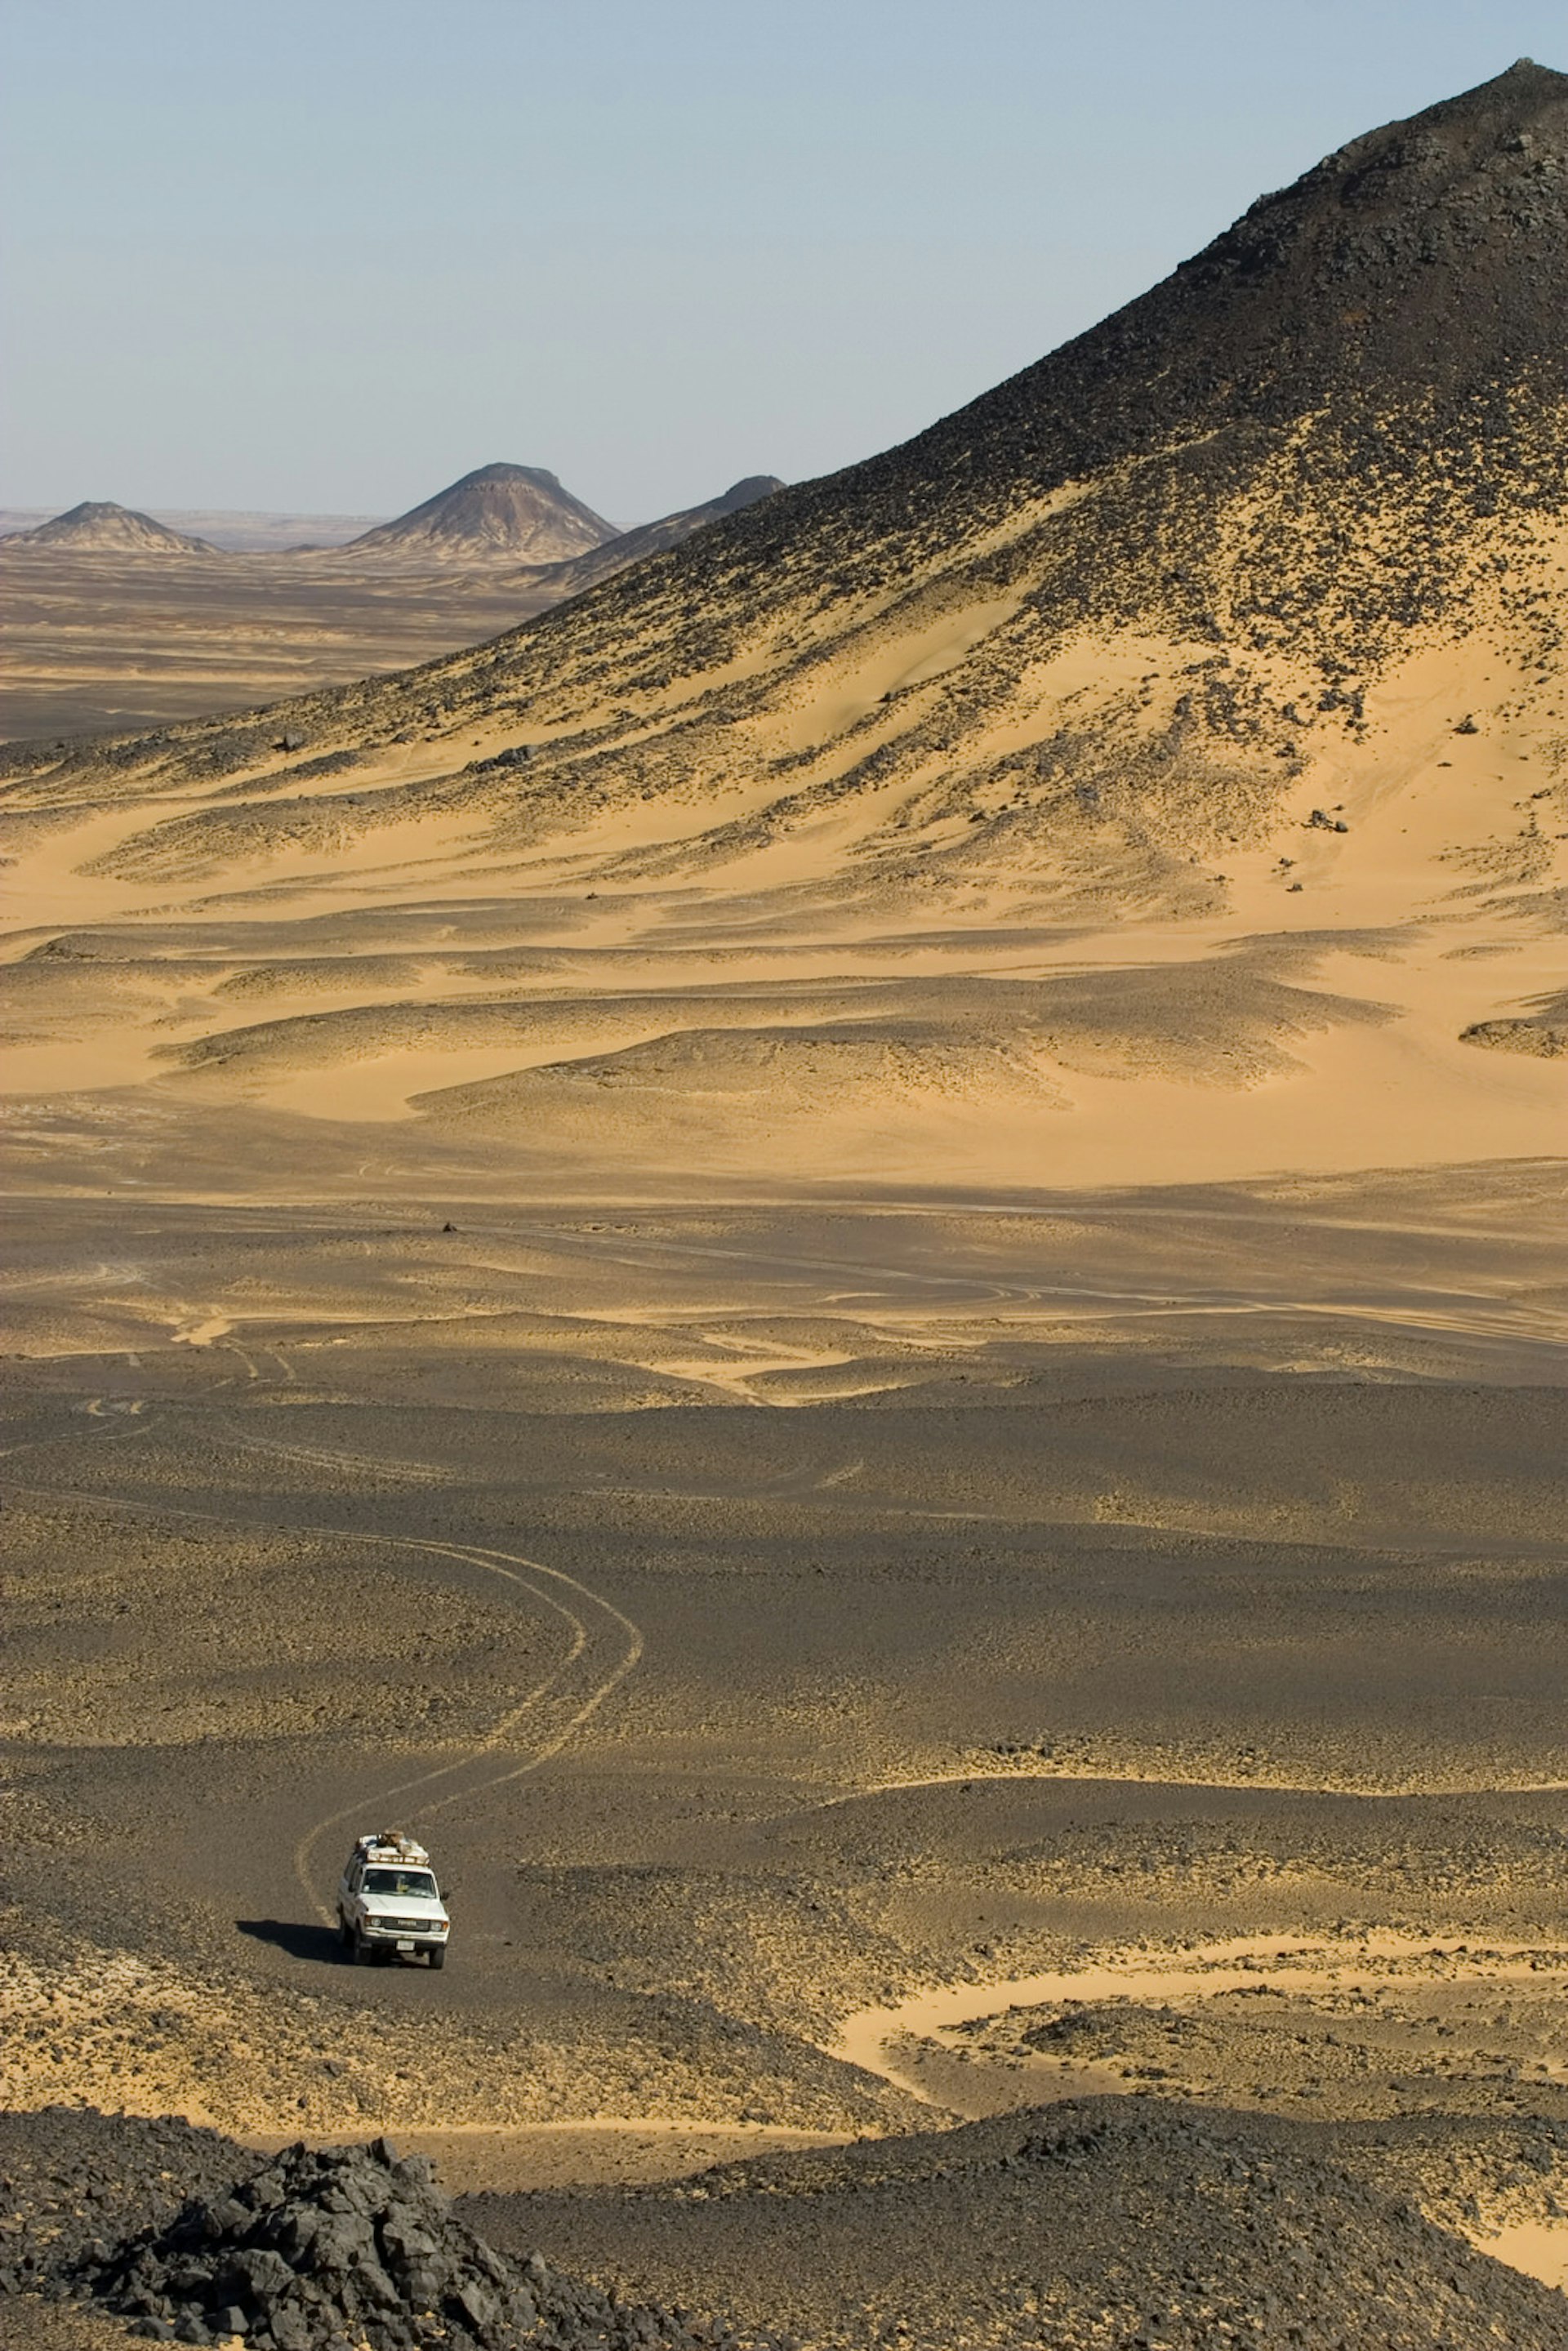 4WD travelling through the Black Desert in Egypt © Martin Vrlik / Shutterstock